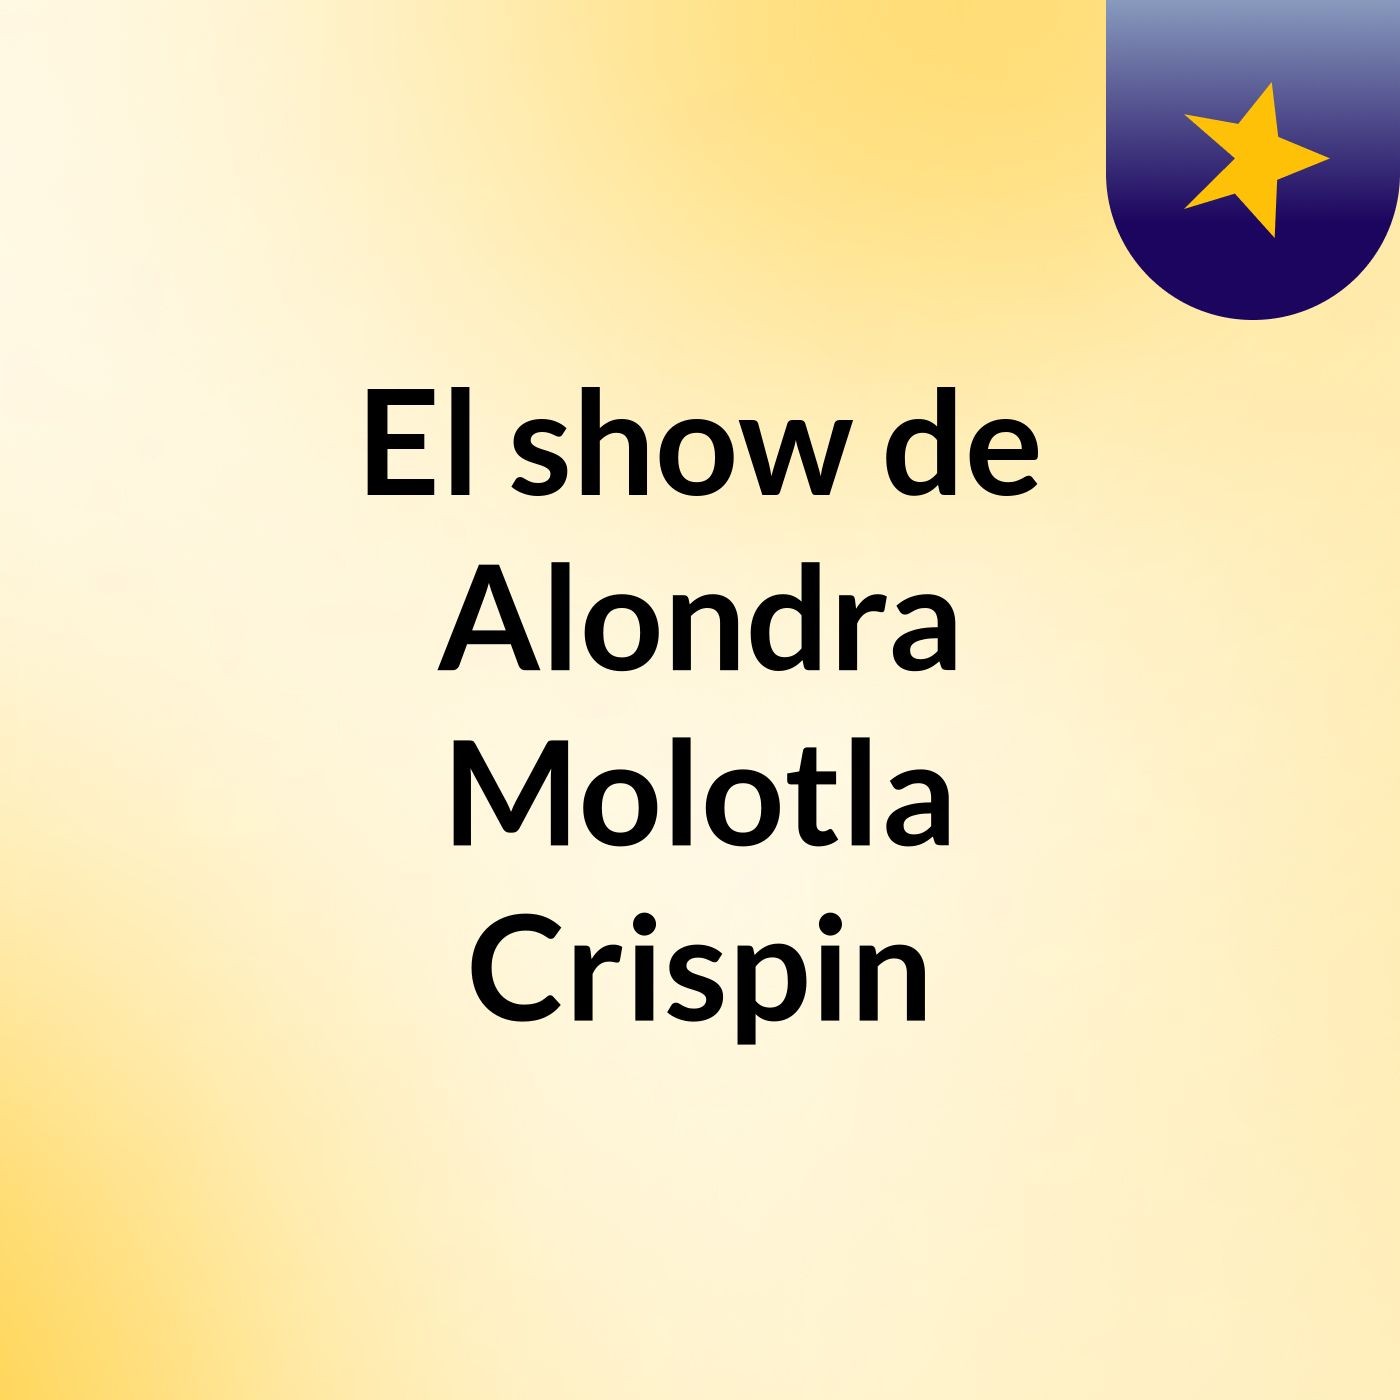 El show de Alondra Molotla Crispin